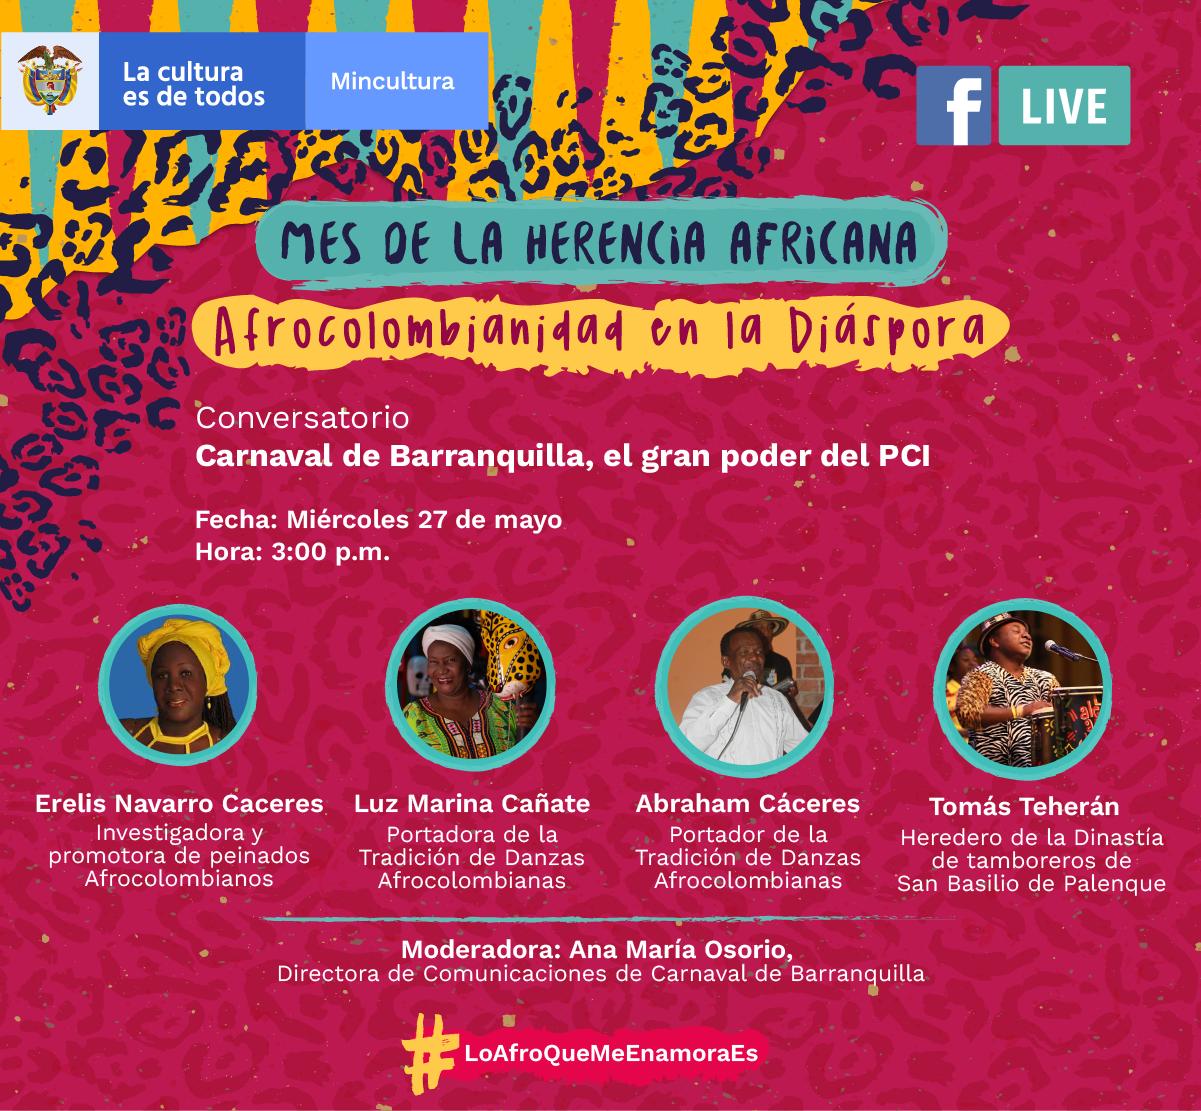 Festival Digital de la Herencia Africana llega al Ministerio de Cultura